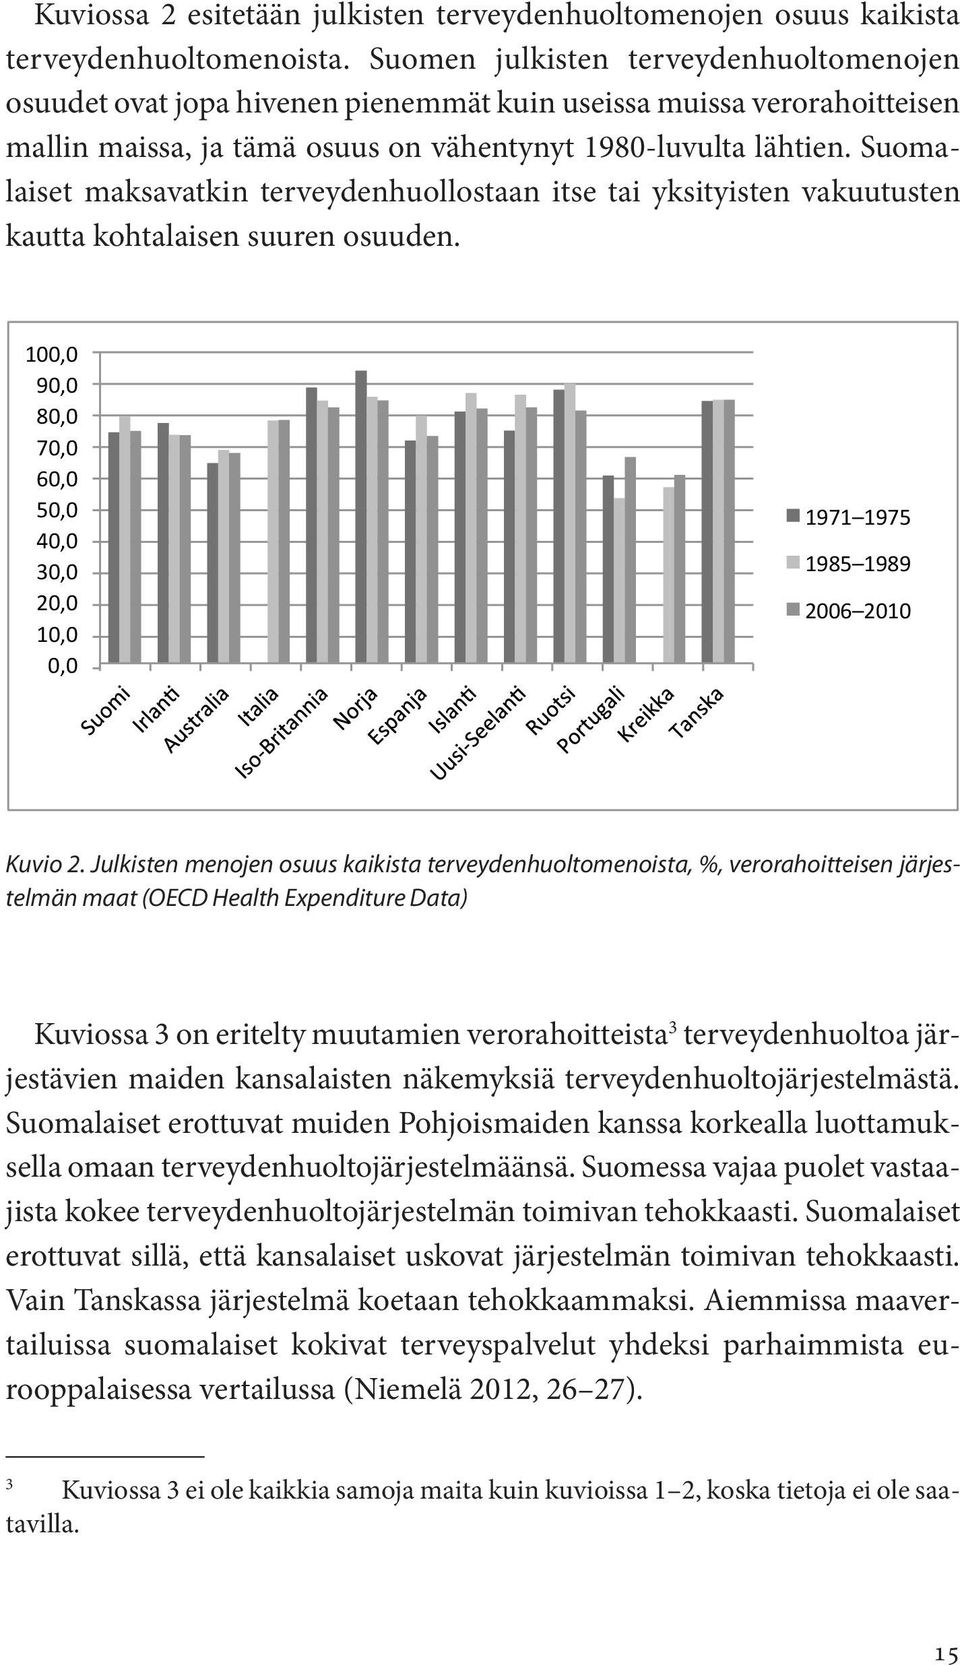 Suomalaiset maksavatkin terveydenhuollostaan itse tai yksityisten vakuutusten kautta kohtalaisen suuren osuuden.